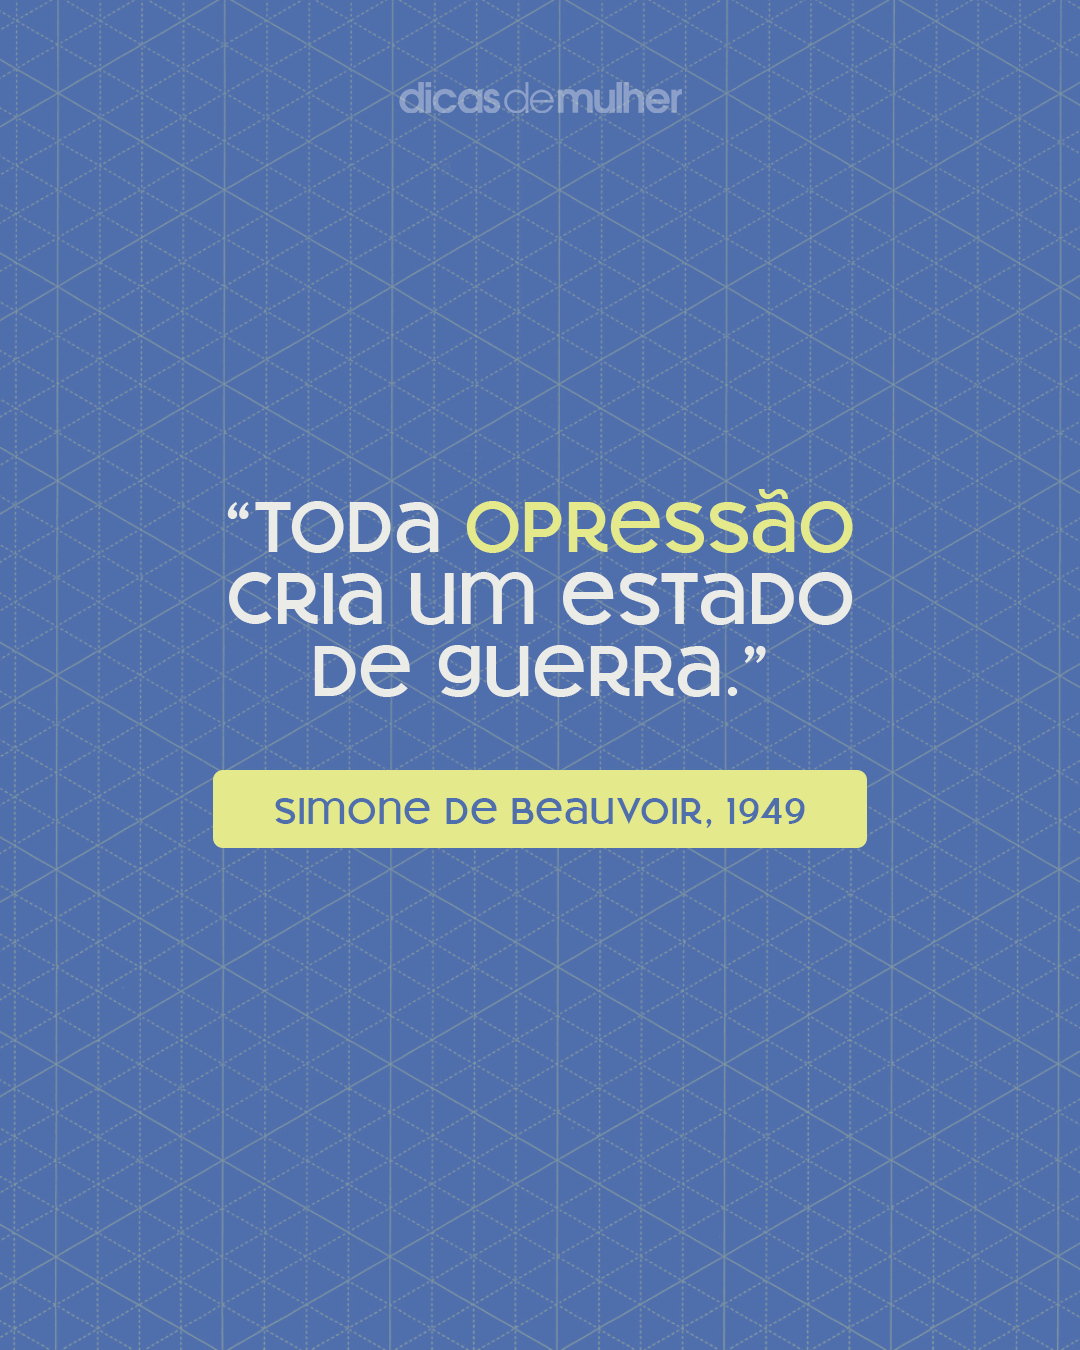 15 frases relevantes que mostram o pensamento de Simone de Beauvoir